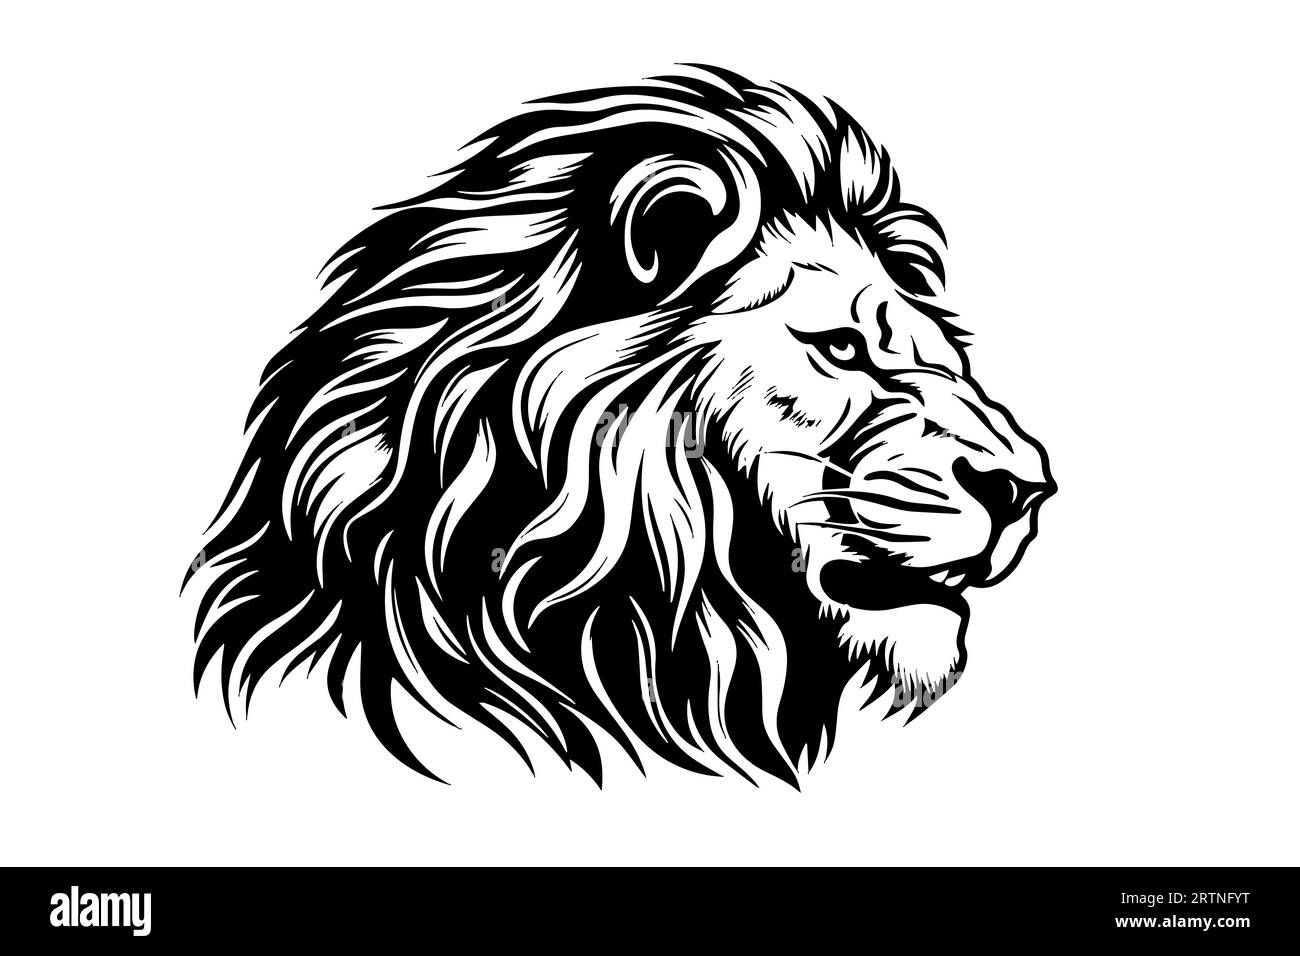 La tête de lion dessine à la main la gravure vintage illustration vectorielle noir et blanc sur fond blanc. Illustration de Vecteur